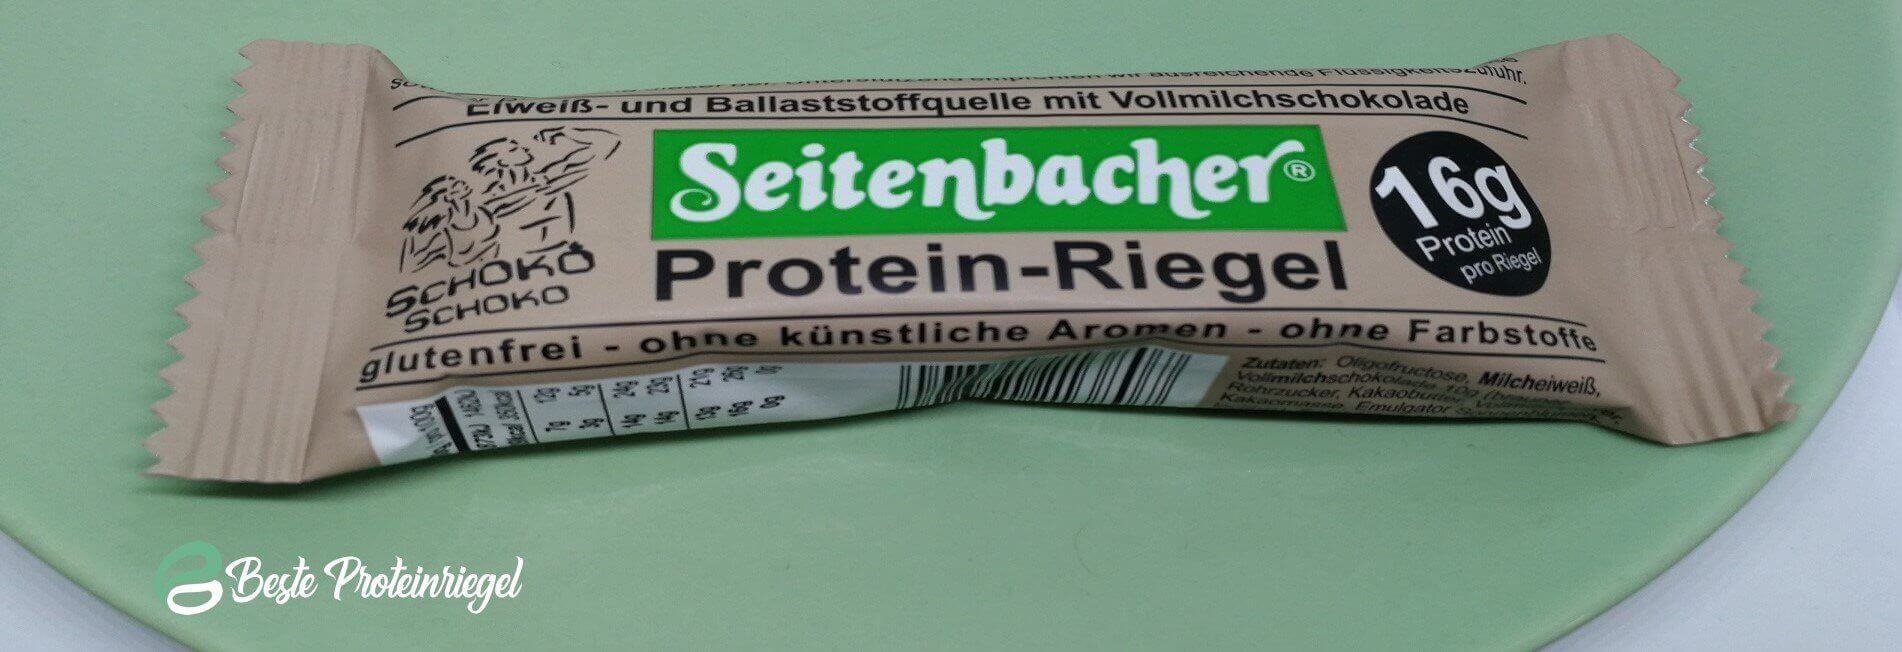 Seitenbacher Protein-Riegel Testbericht